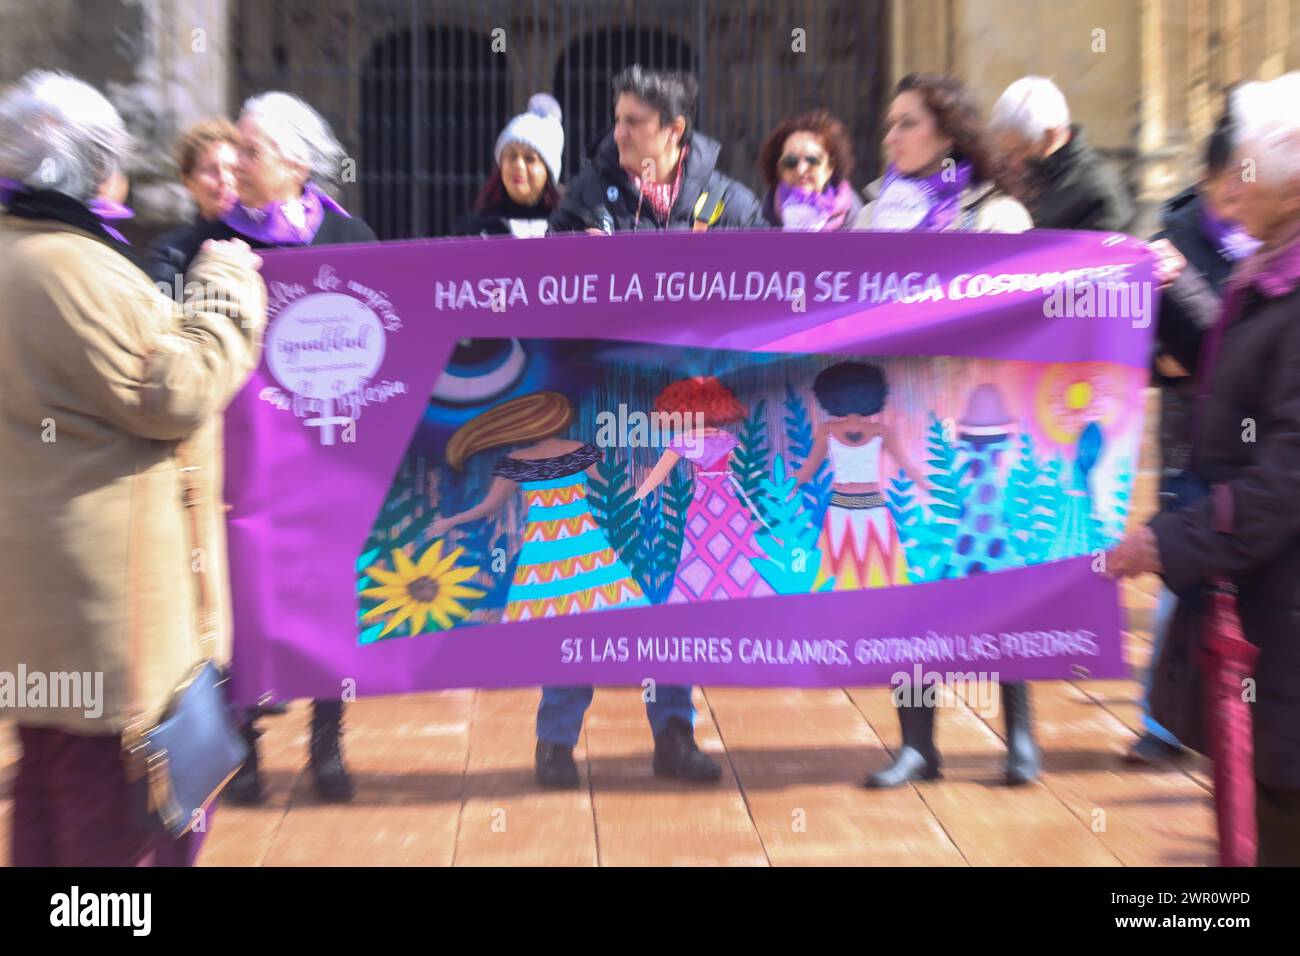 Oviedo, Spanien, 10. März 2024: Das Hauptbanner der Kundgebung mit „bis Gleichheit zur Gewohnheit wird, wenn Frauen schweigen, werden die Steine schreien“ während der Kundgebung bis Gleichheit zur Gewohnheit wird, 10. März 2024 2024 in Oviedo, Spanien. Quelle: Alberto Brevers / Alamy Live News. Stockfoto